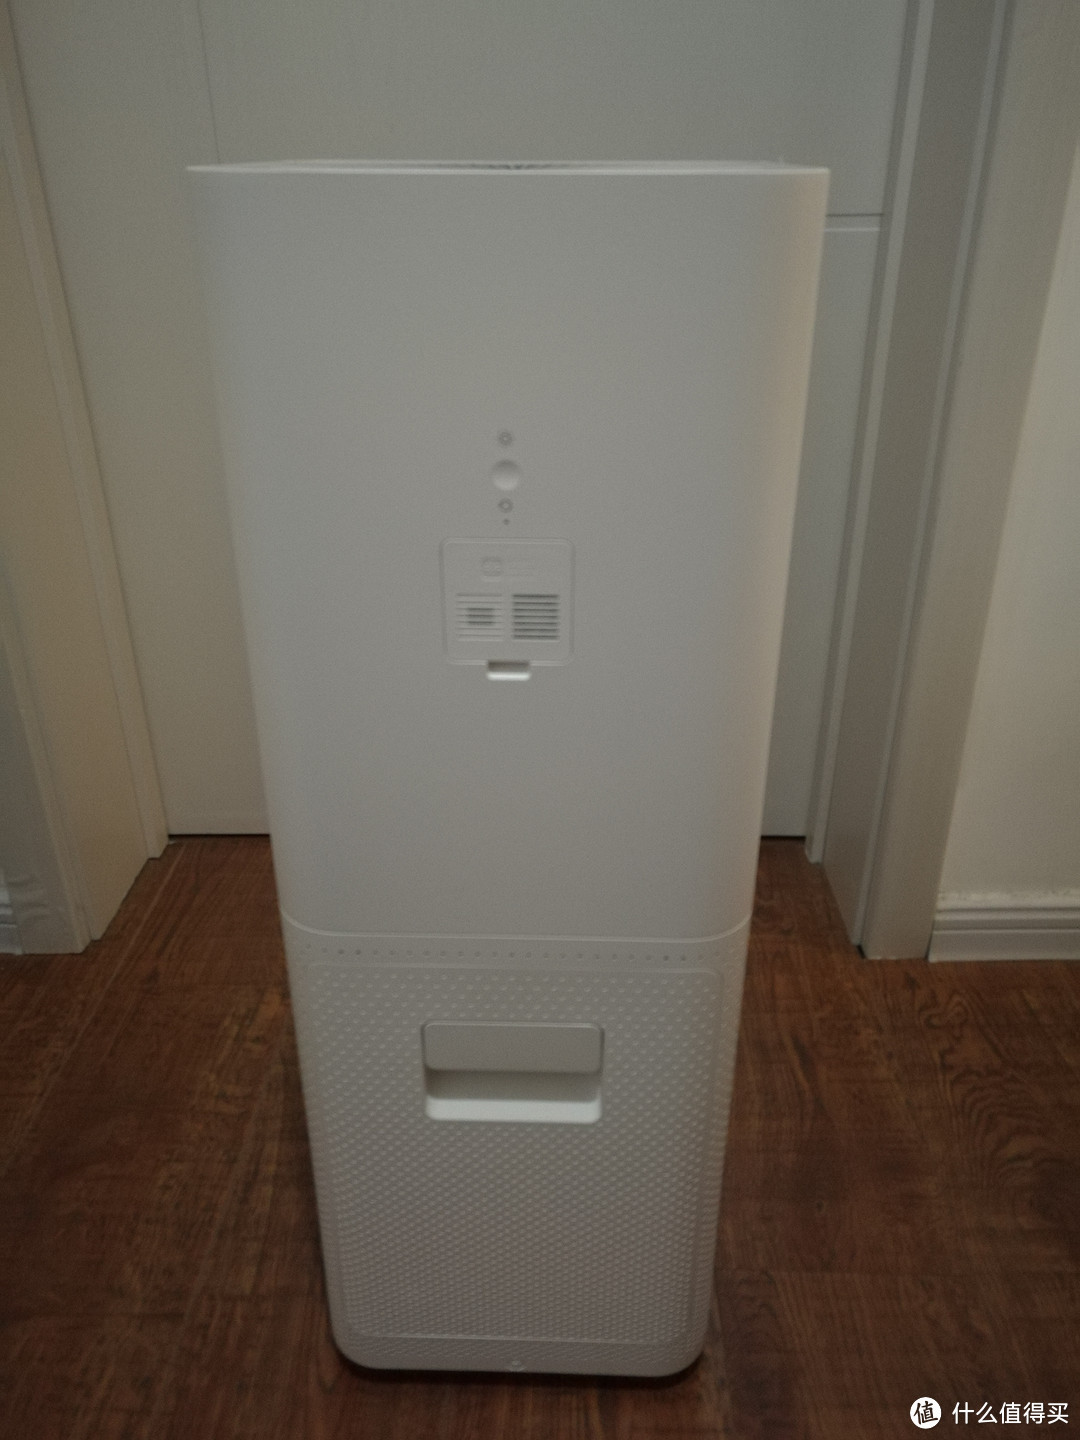 家中第一台空气净化器 — MI 小米 米家空气净化器 Pro 开箱